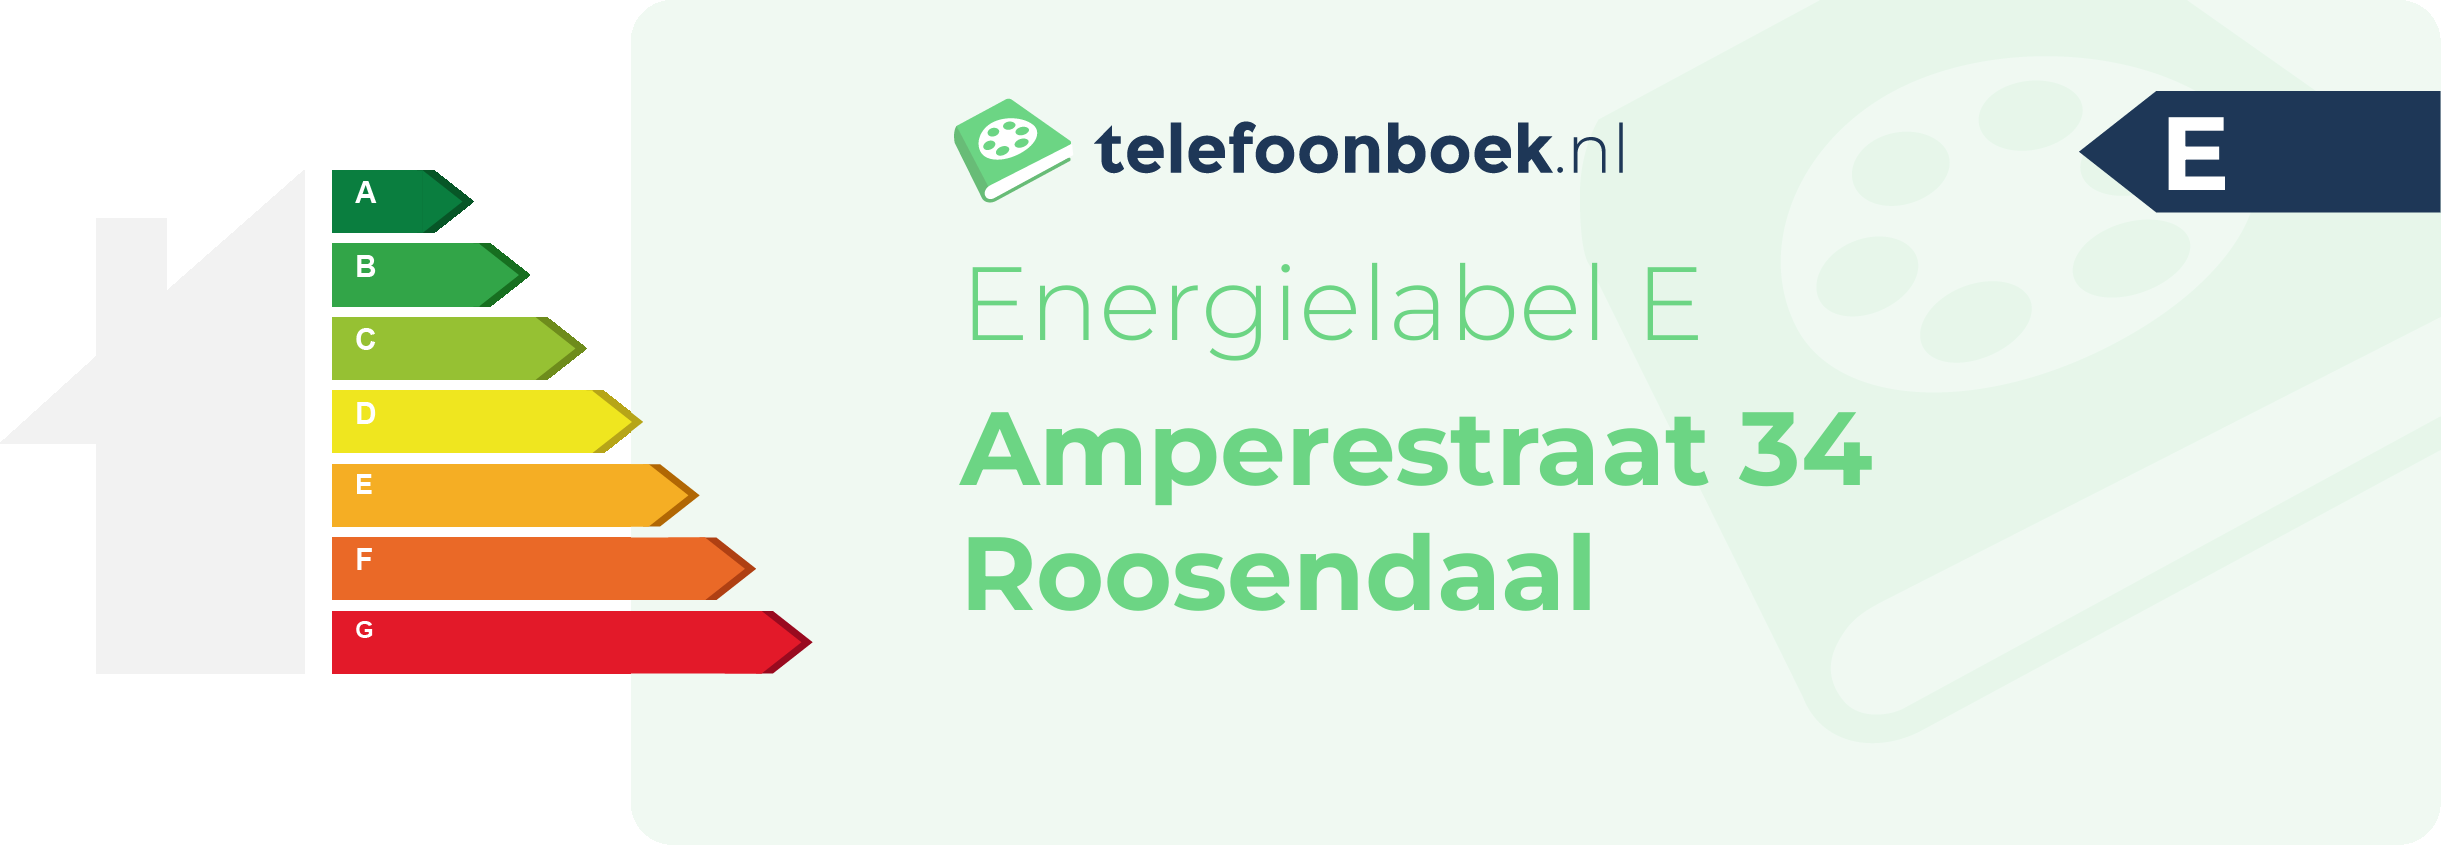 Energielabel Amperestraat 34 Roosendaal